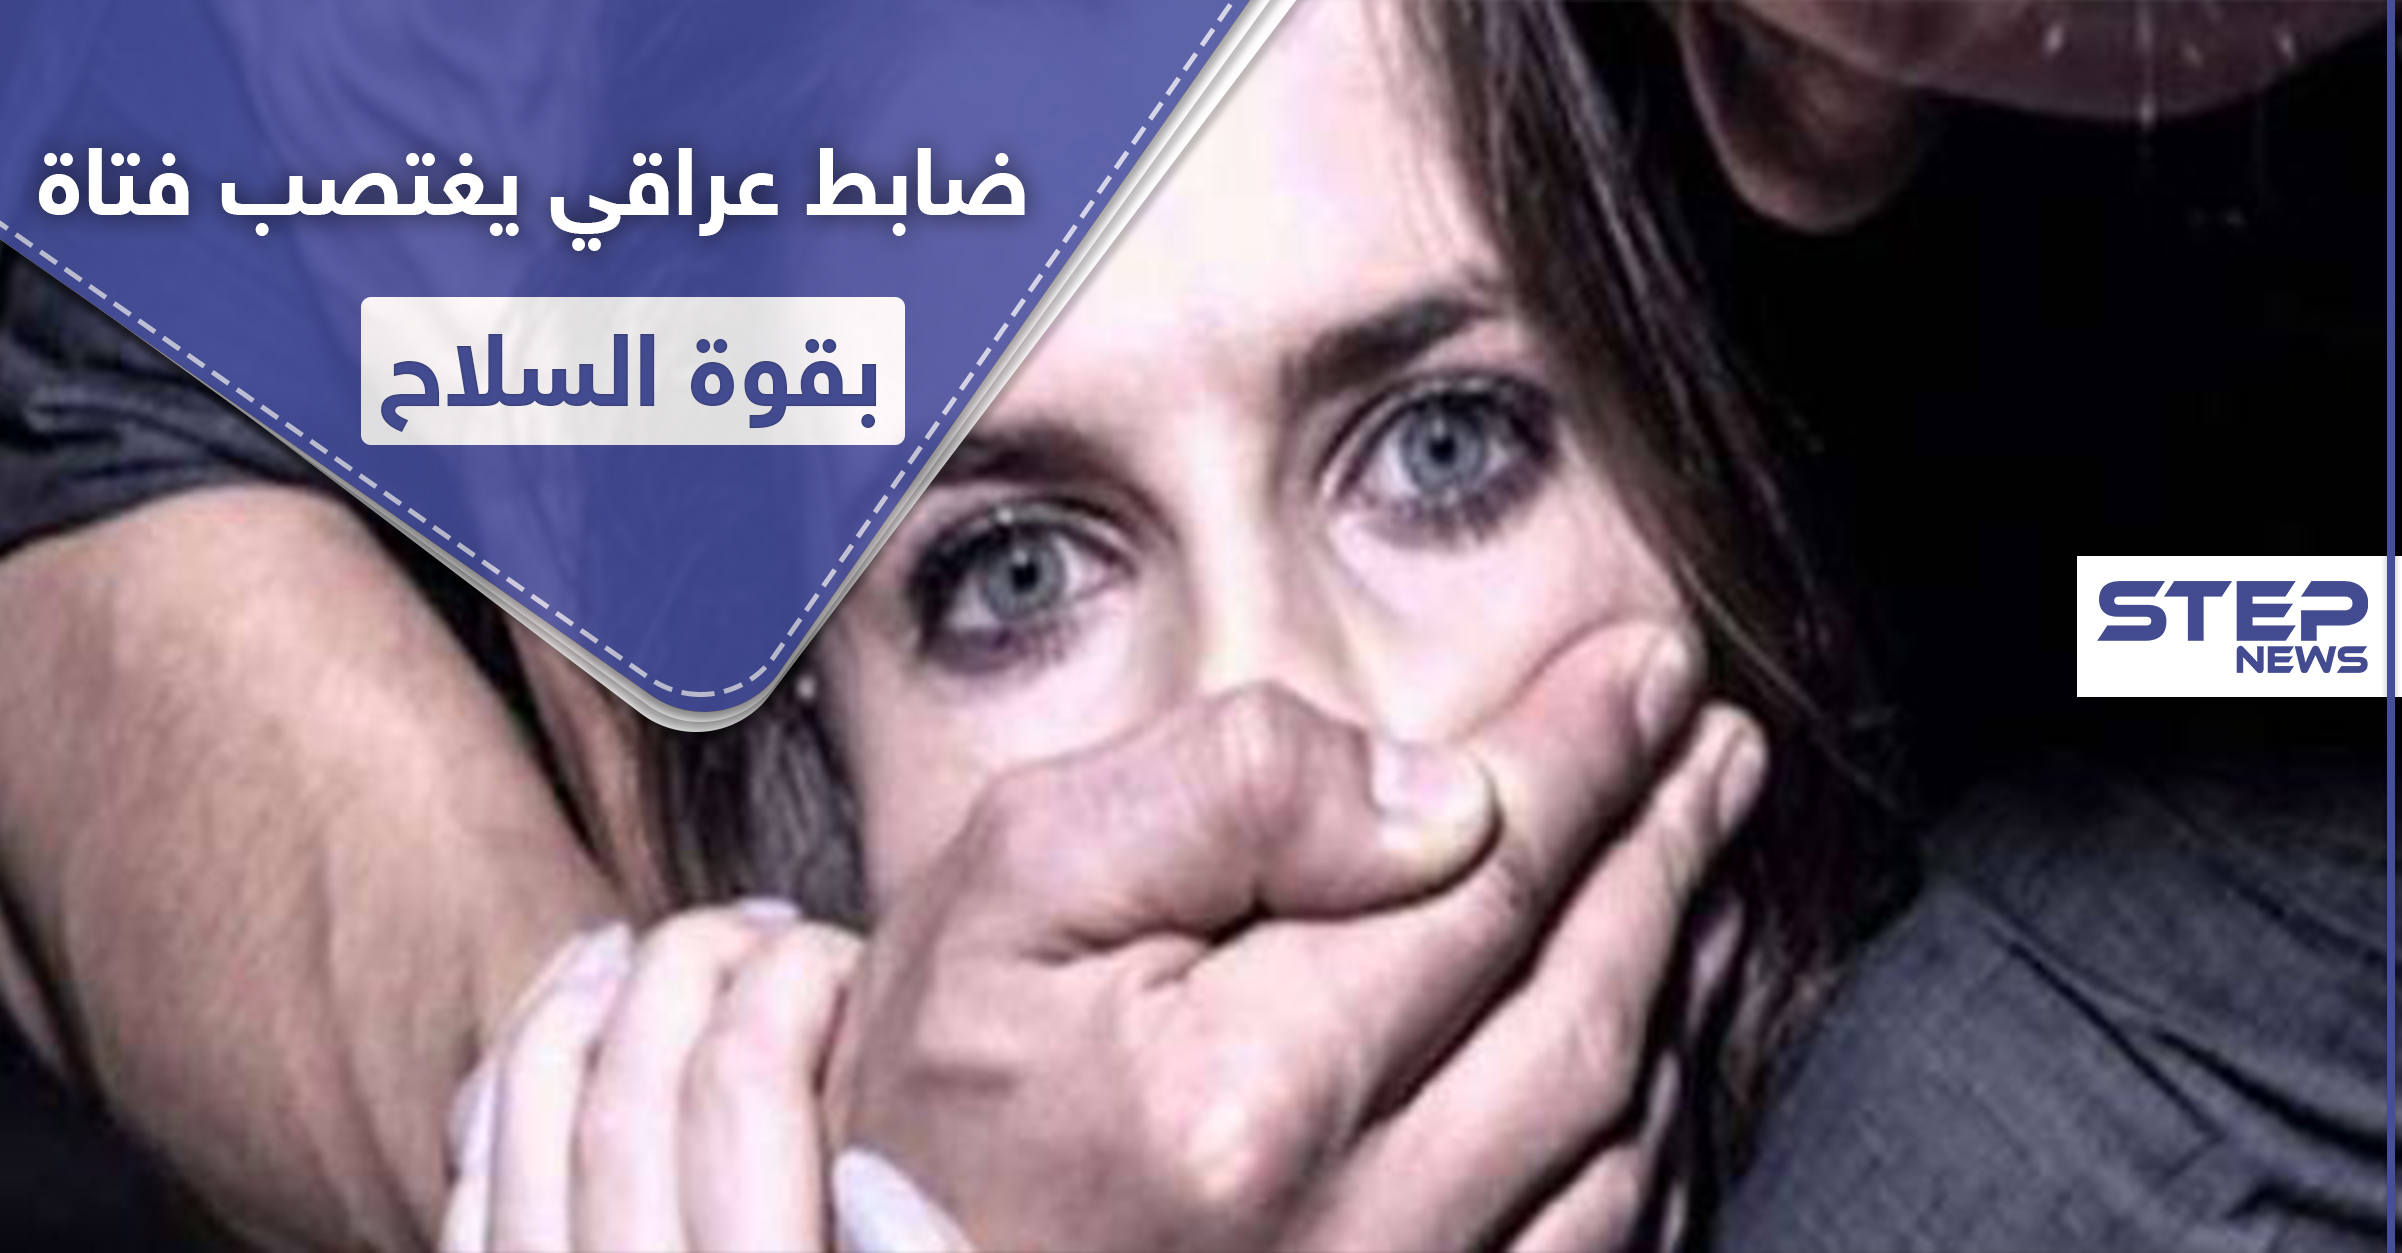 ضابط عراقي رفيع المستوى يغتصب فتاة داخل منزلها بقوة السلاح.. وحملة لــ"إعادة هيبة الدولة"!